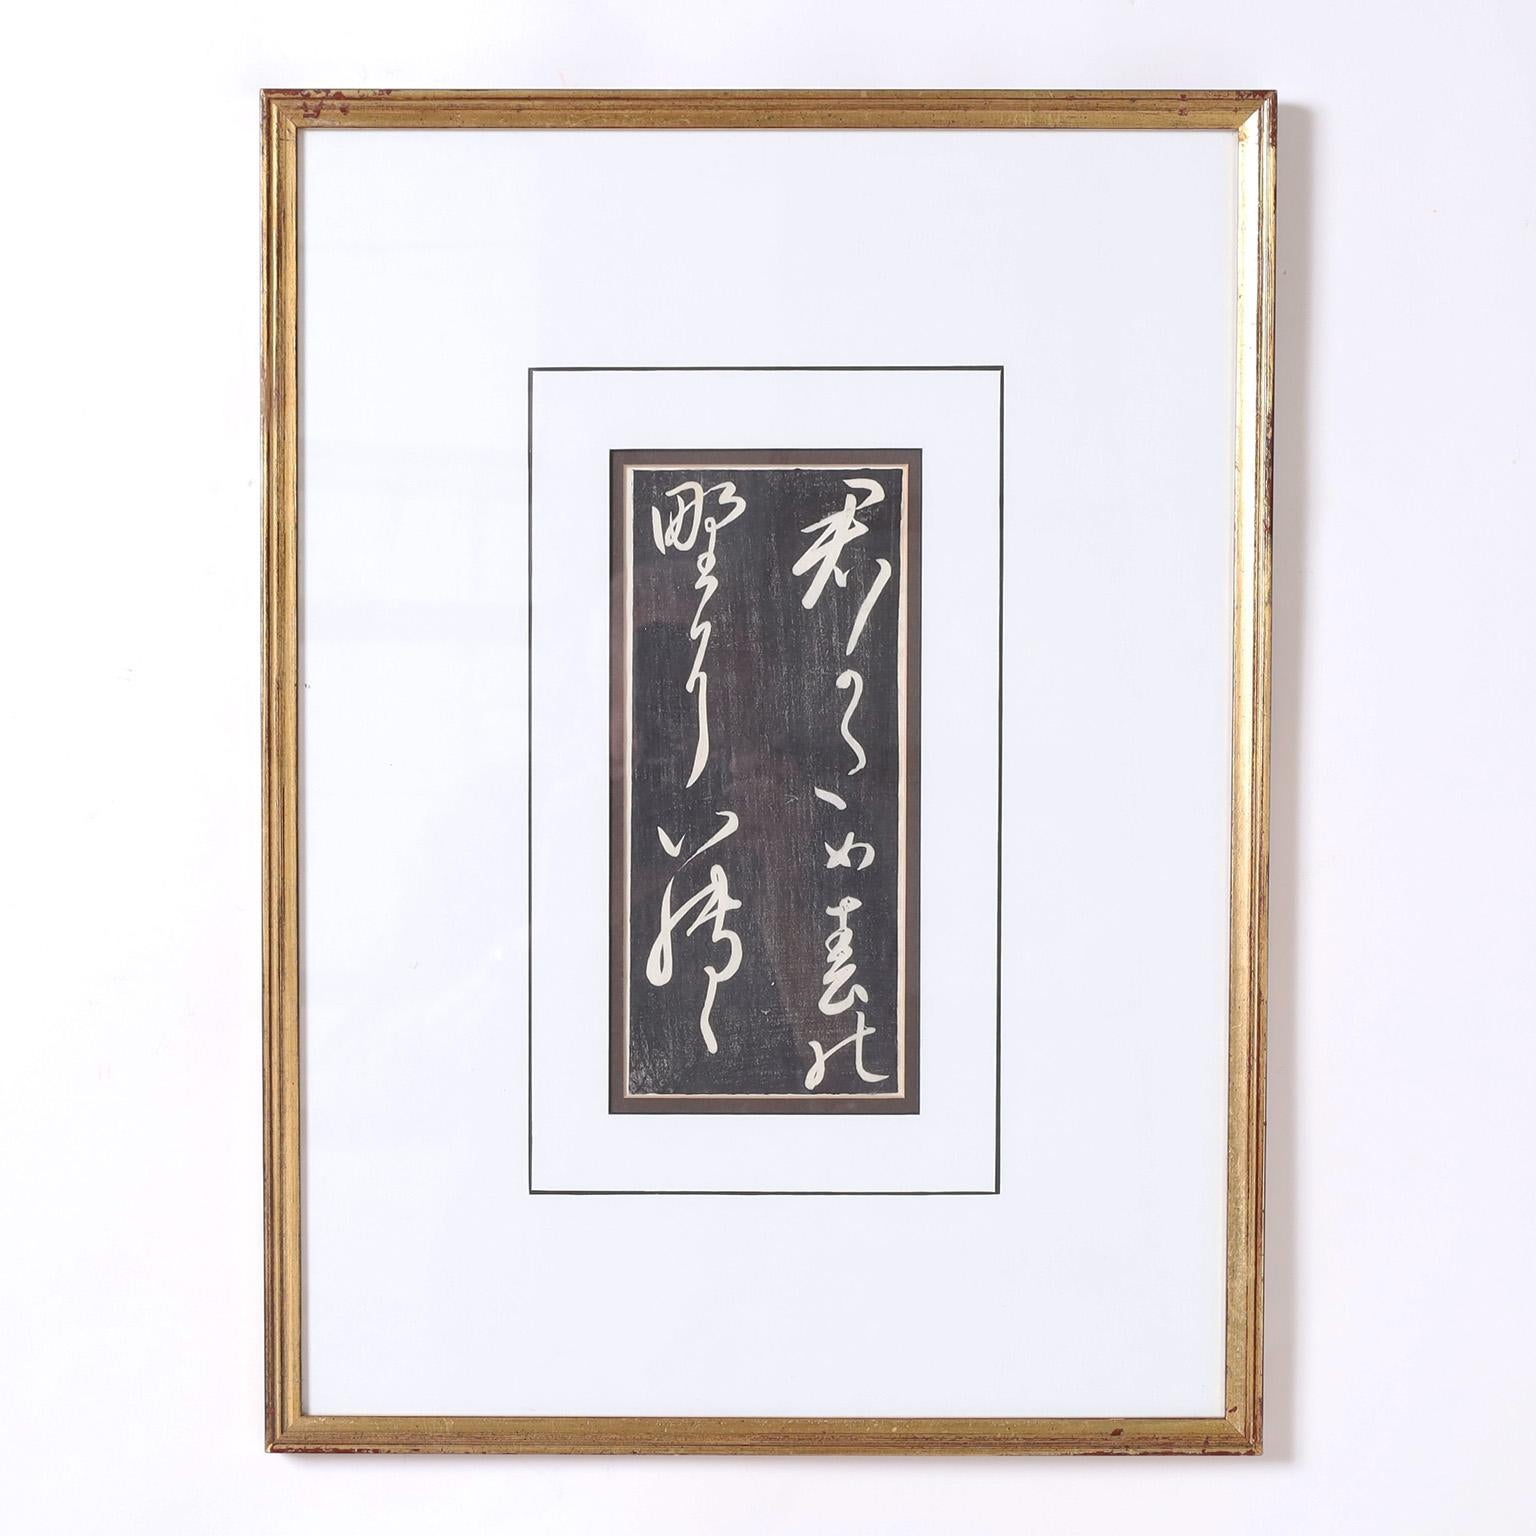 Seltener und bemerkenswerter Satz von zehn japanischen Kalligrafien auf Papier aus dem 19. Jahrhundert, die in Holzschnitttechnik ausgeführt sind und unter Glas in einem vergoldeten Holzrahmen präsentiert werden.